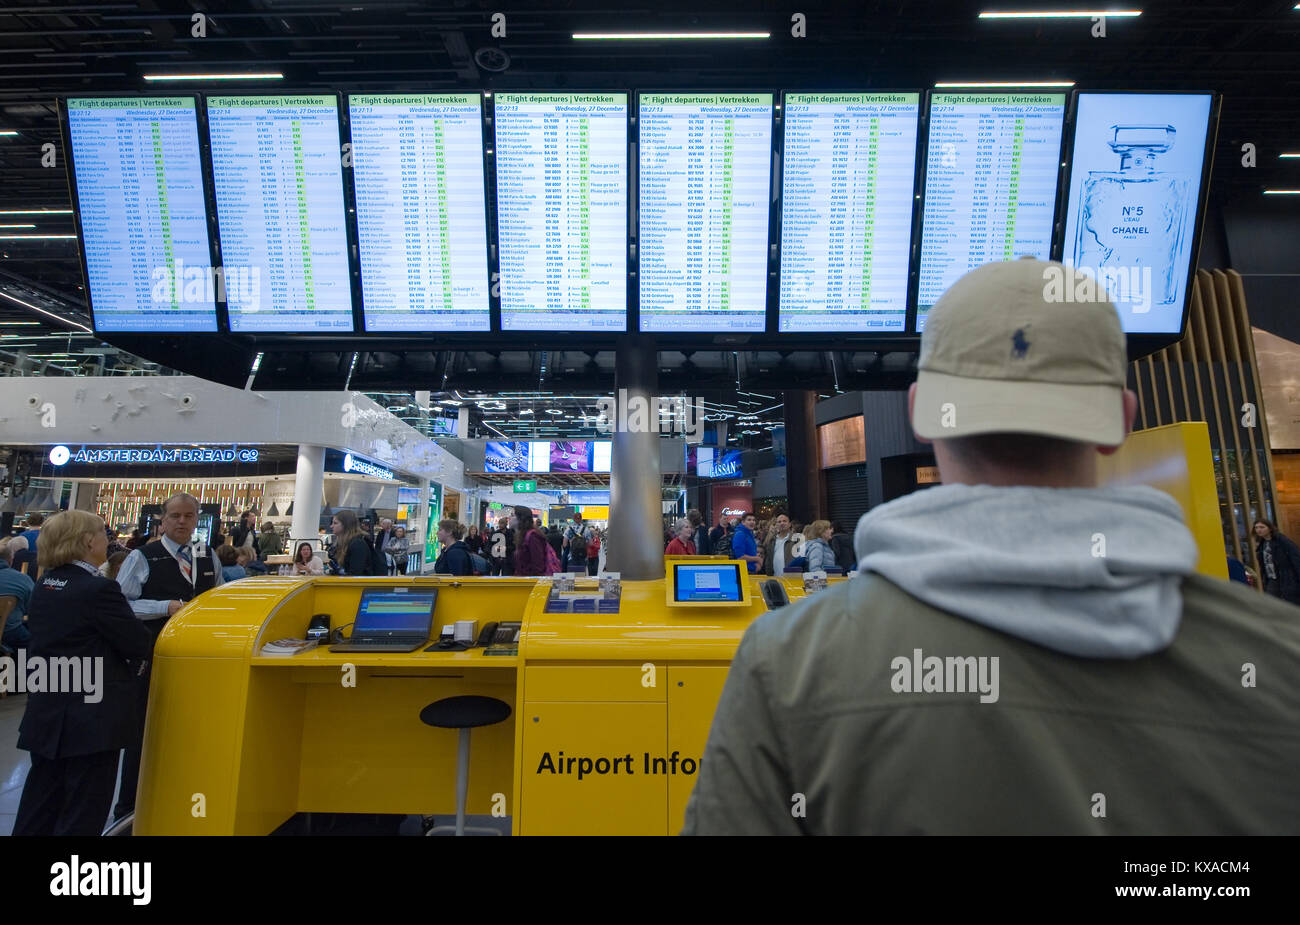 AMSTERDAM, Pays-Bas - DEC 27, 2017 : Un homme se penche sur les écrans d'informations à vérifier son vol sur l'aéroport de Schiphol près d'Amsterdam Banque D'Images